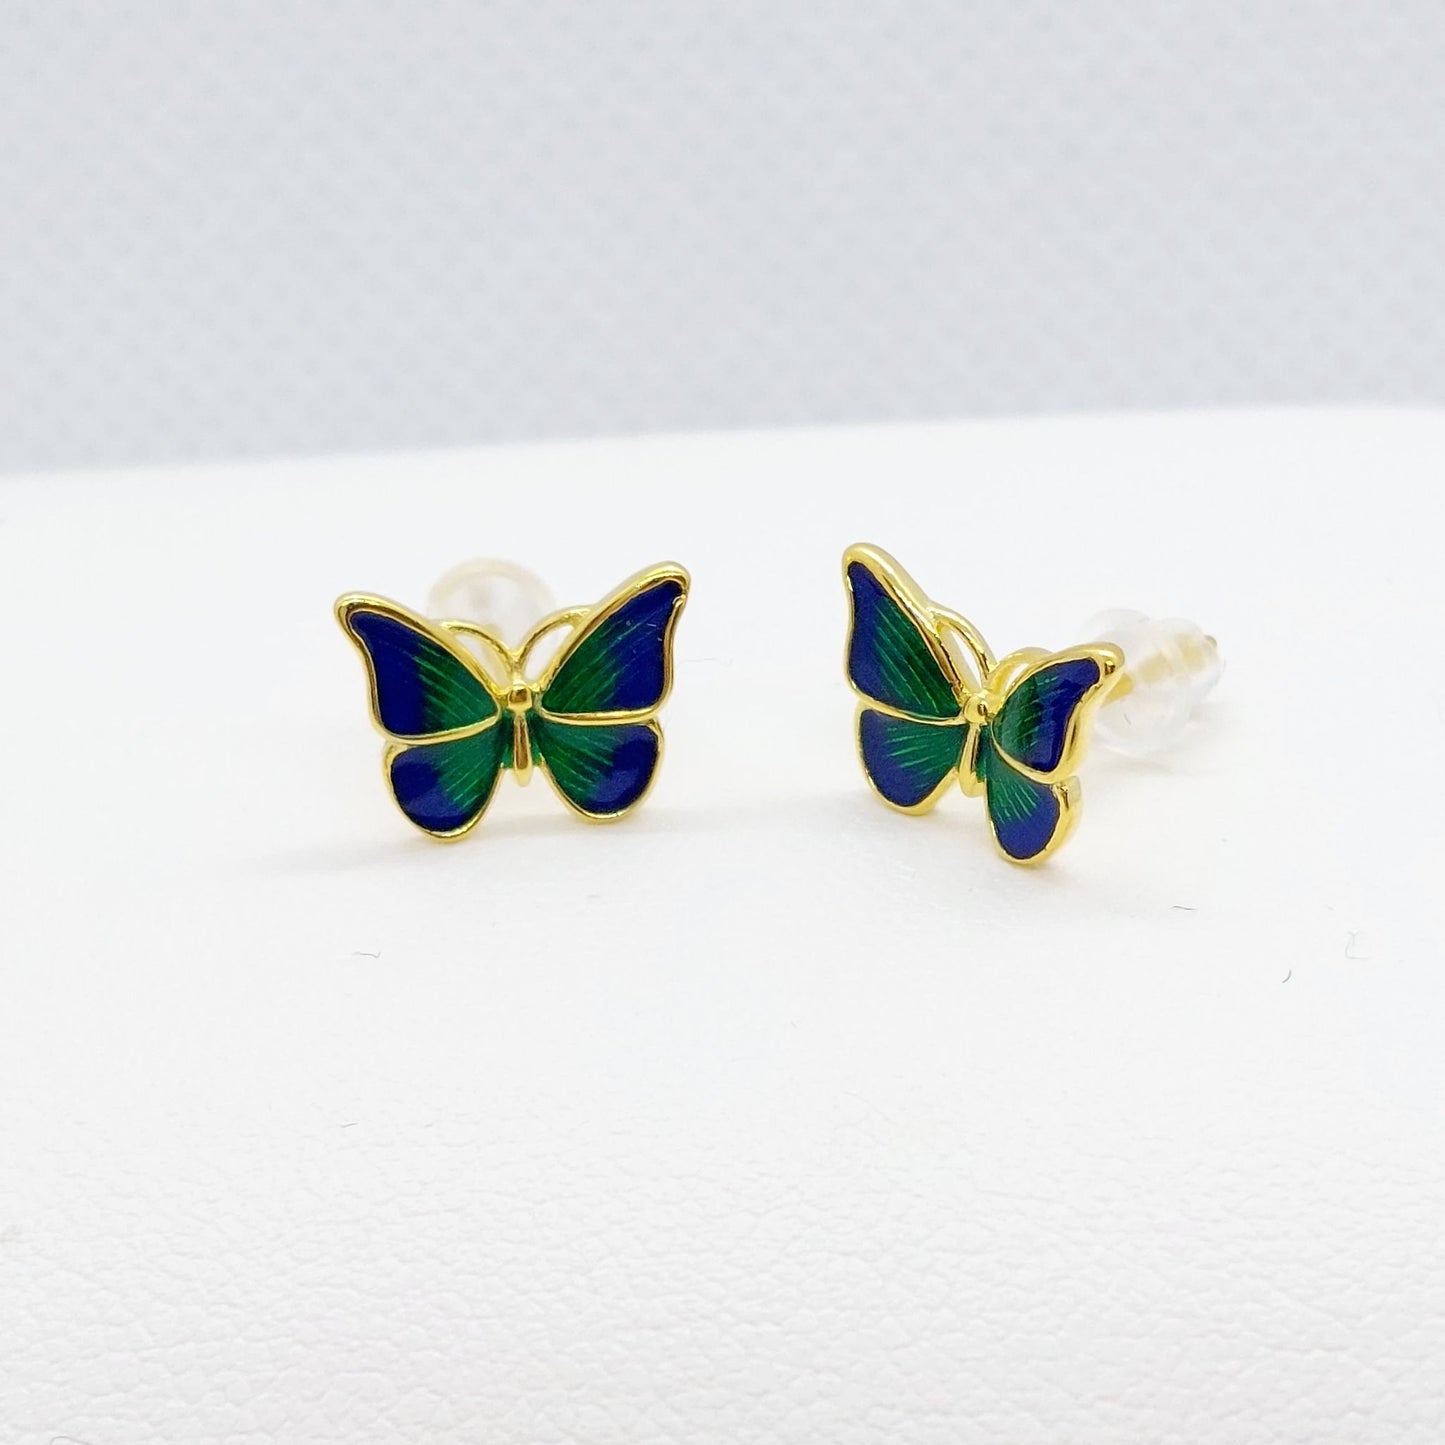 Blue & Green Enamel Butterfly Stud Earrings - Sterling Silver Gold Plated